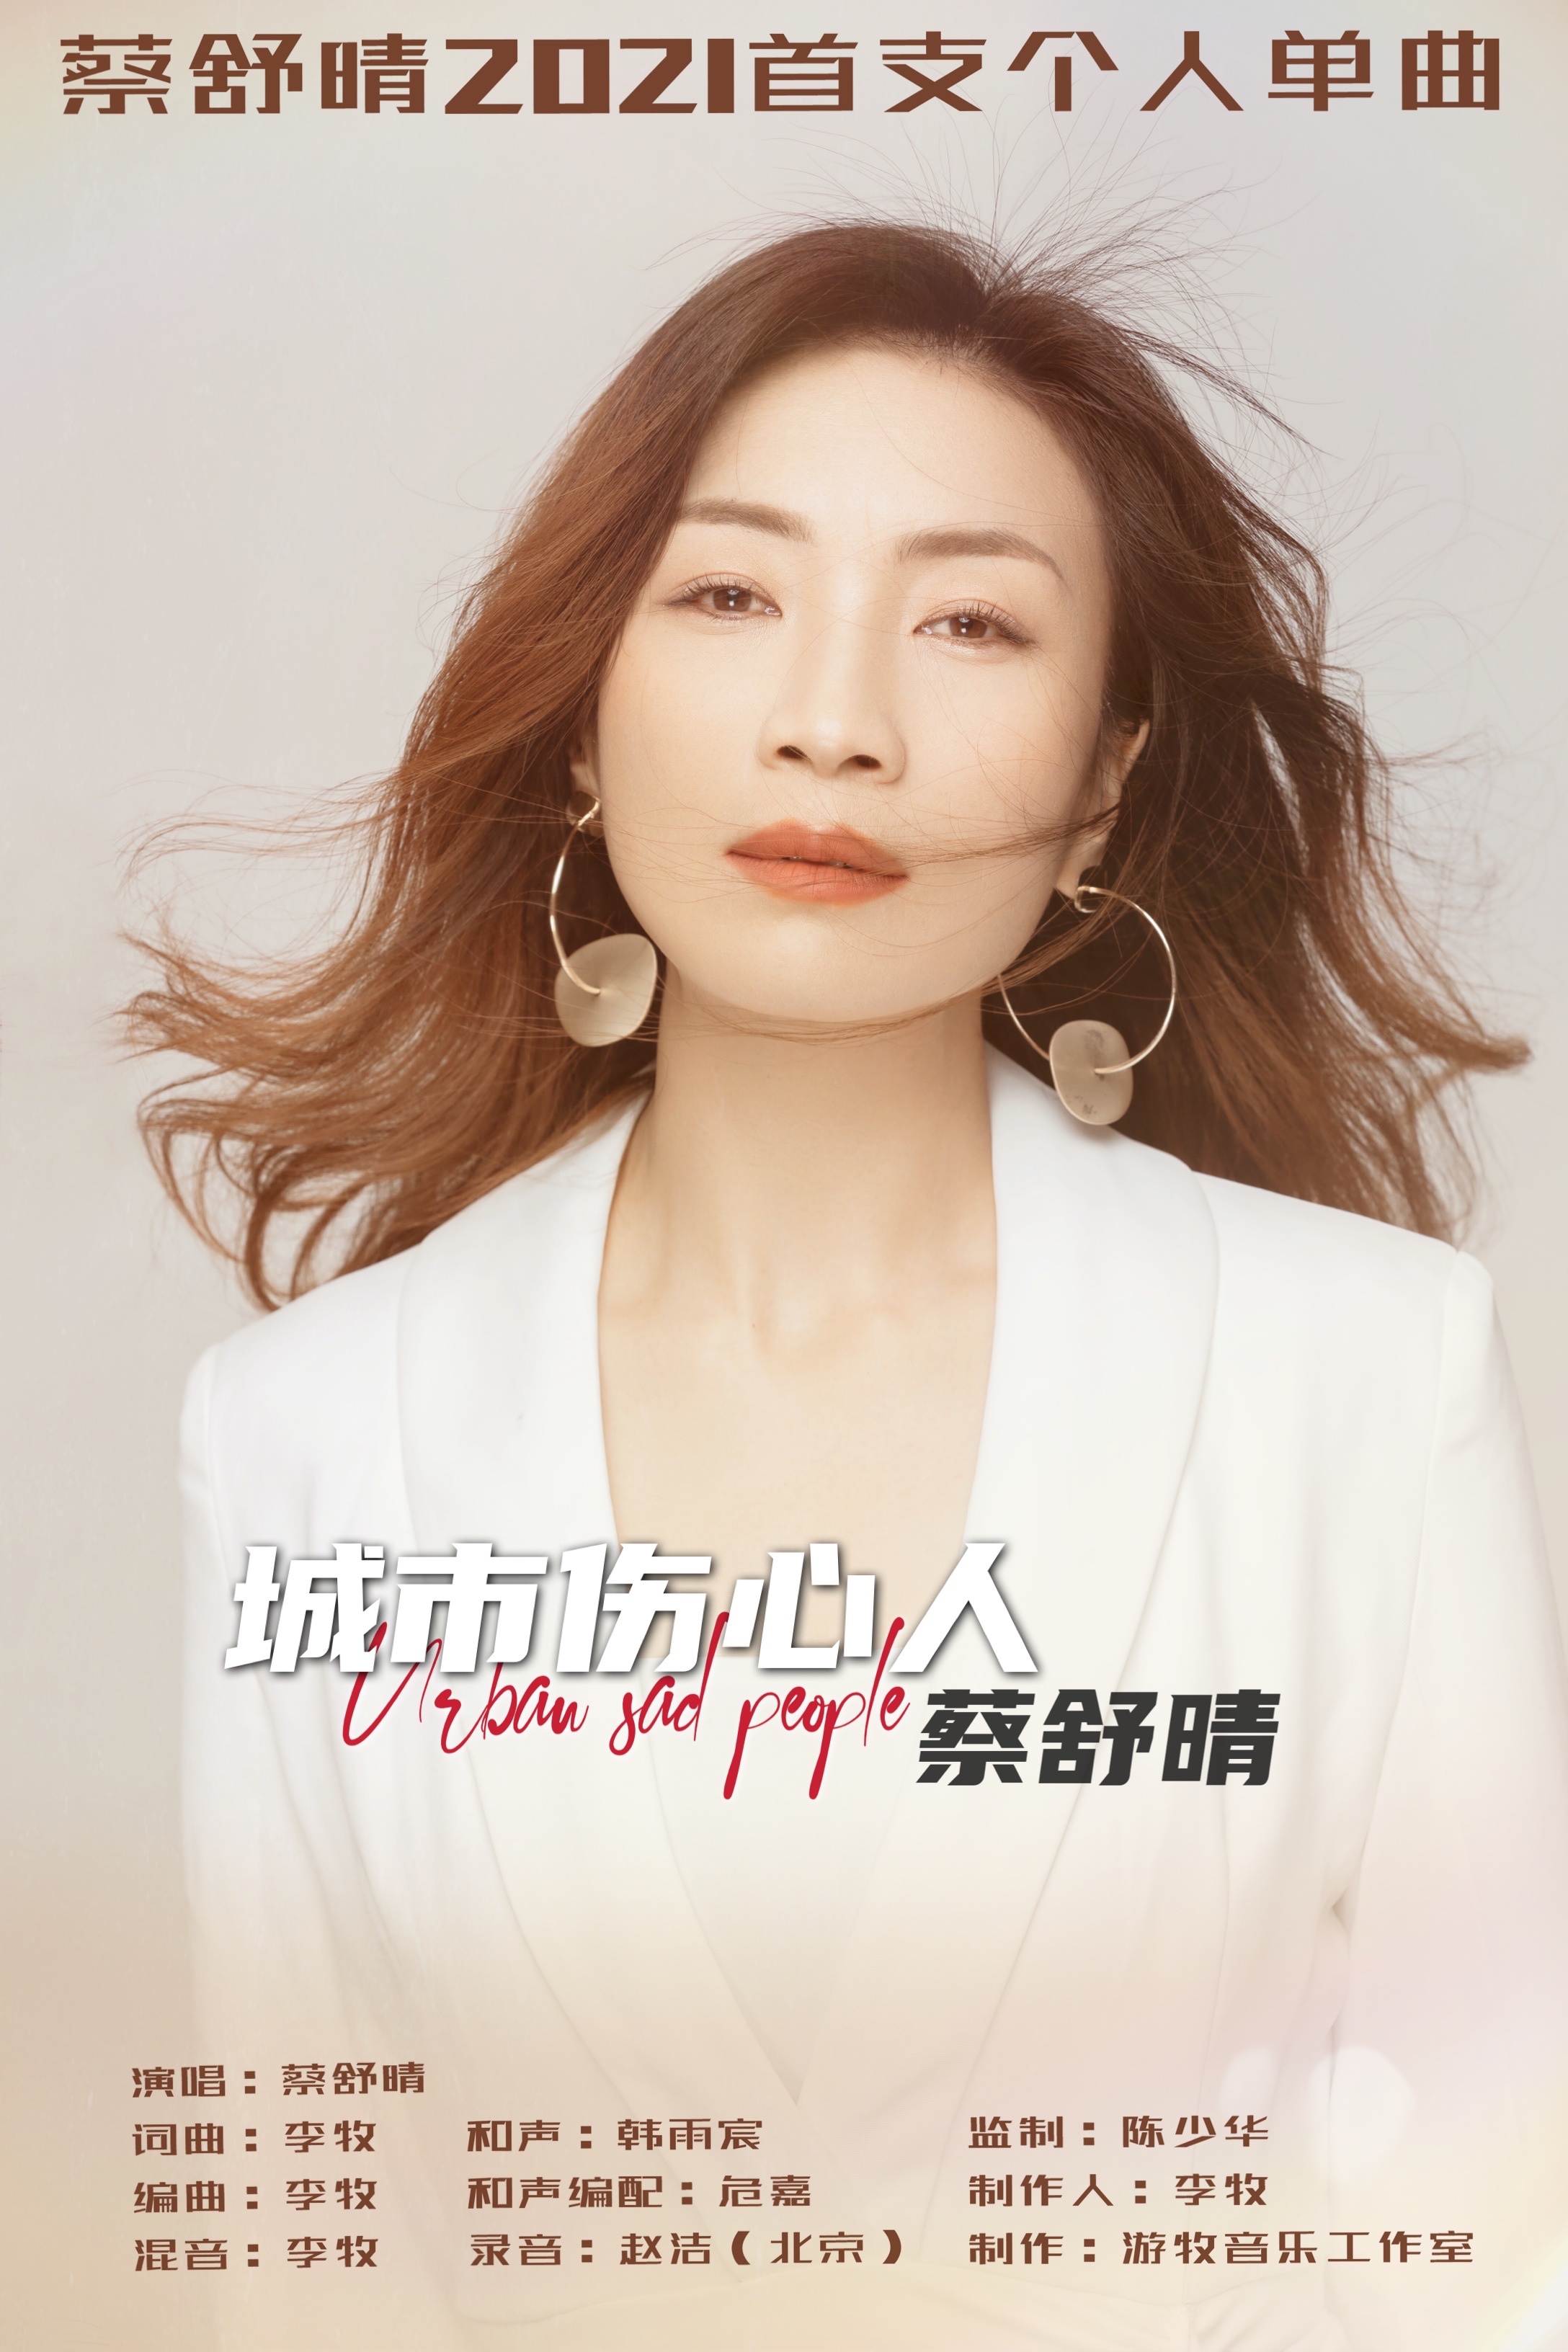 内地女歌手「蔡舒晴」2021个人单曲《城市伤心人》隆重上线